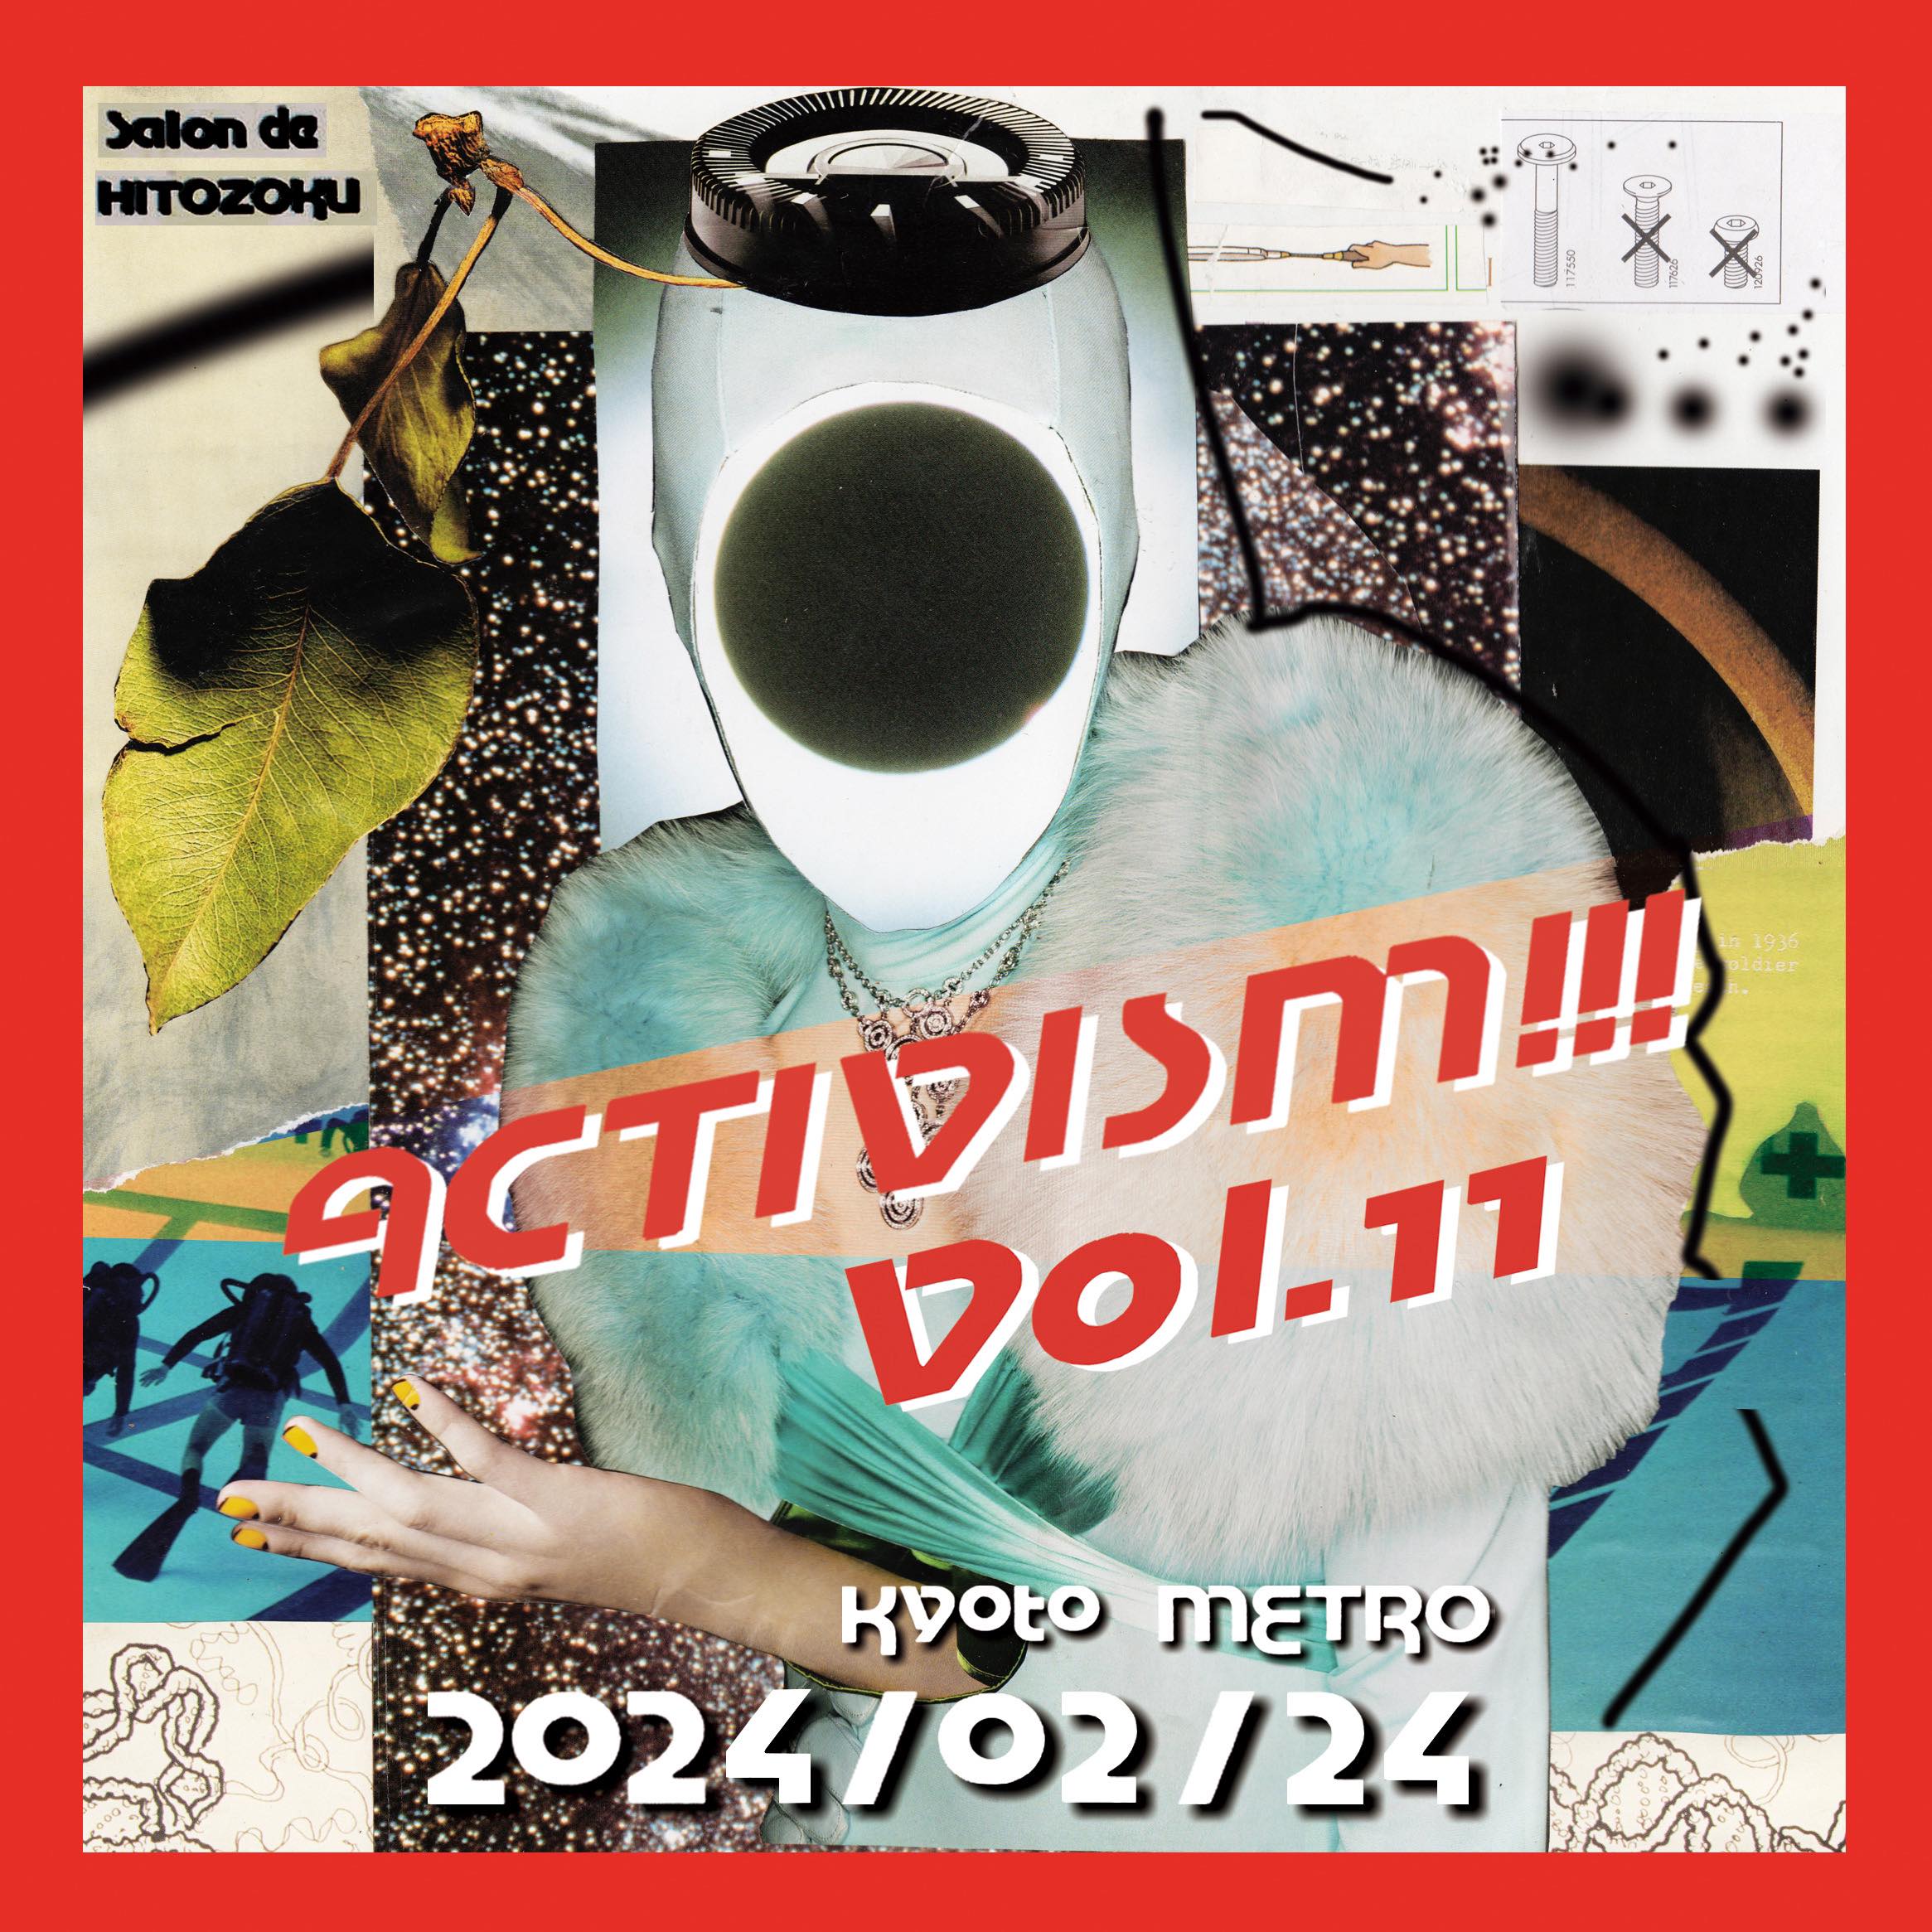 Salon de HITOZOKU presents ACTIVISM!!! vol.11 | CLUB METRO | 京都 